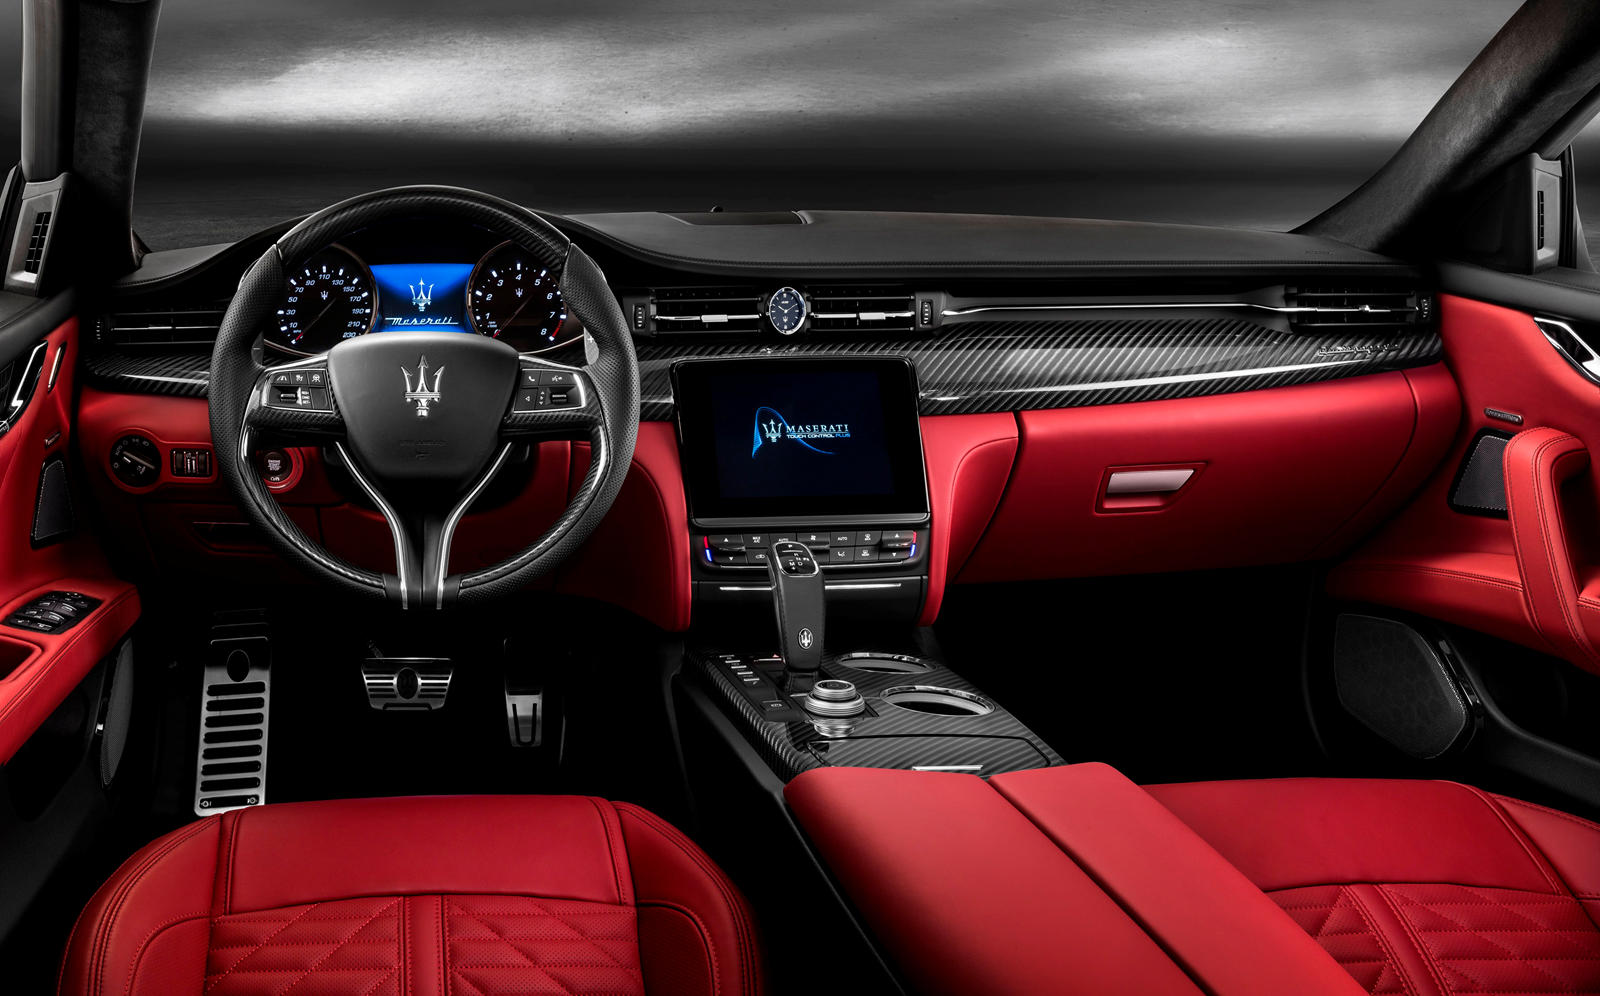 2019 Maserati Quattroporte Dashboard